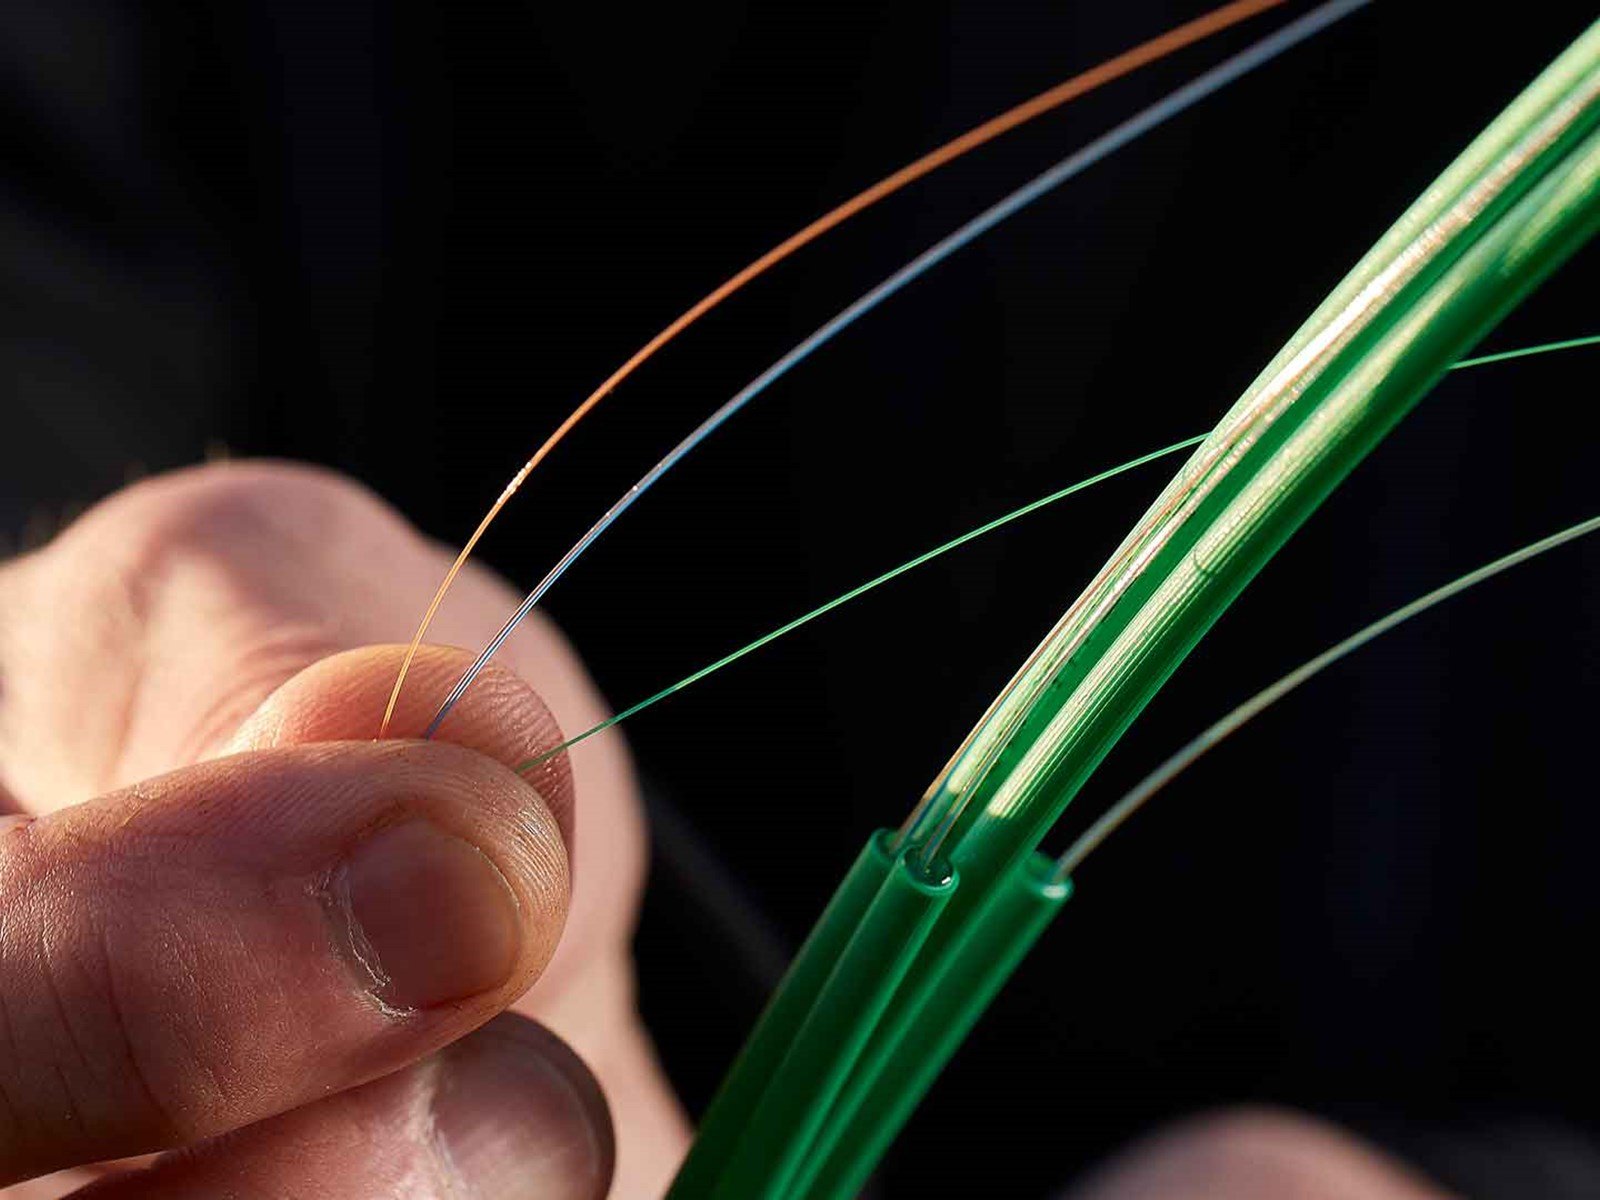 Hånd holder fibernet kabel. Hvad er fibernet egentlig? Og hvad er et lyslederkabel? Bliv klogere på fibernet og forskellen på fibernet og bredbånd her.